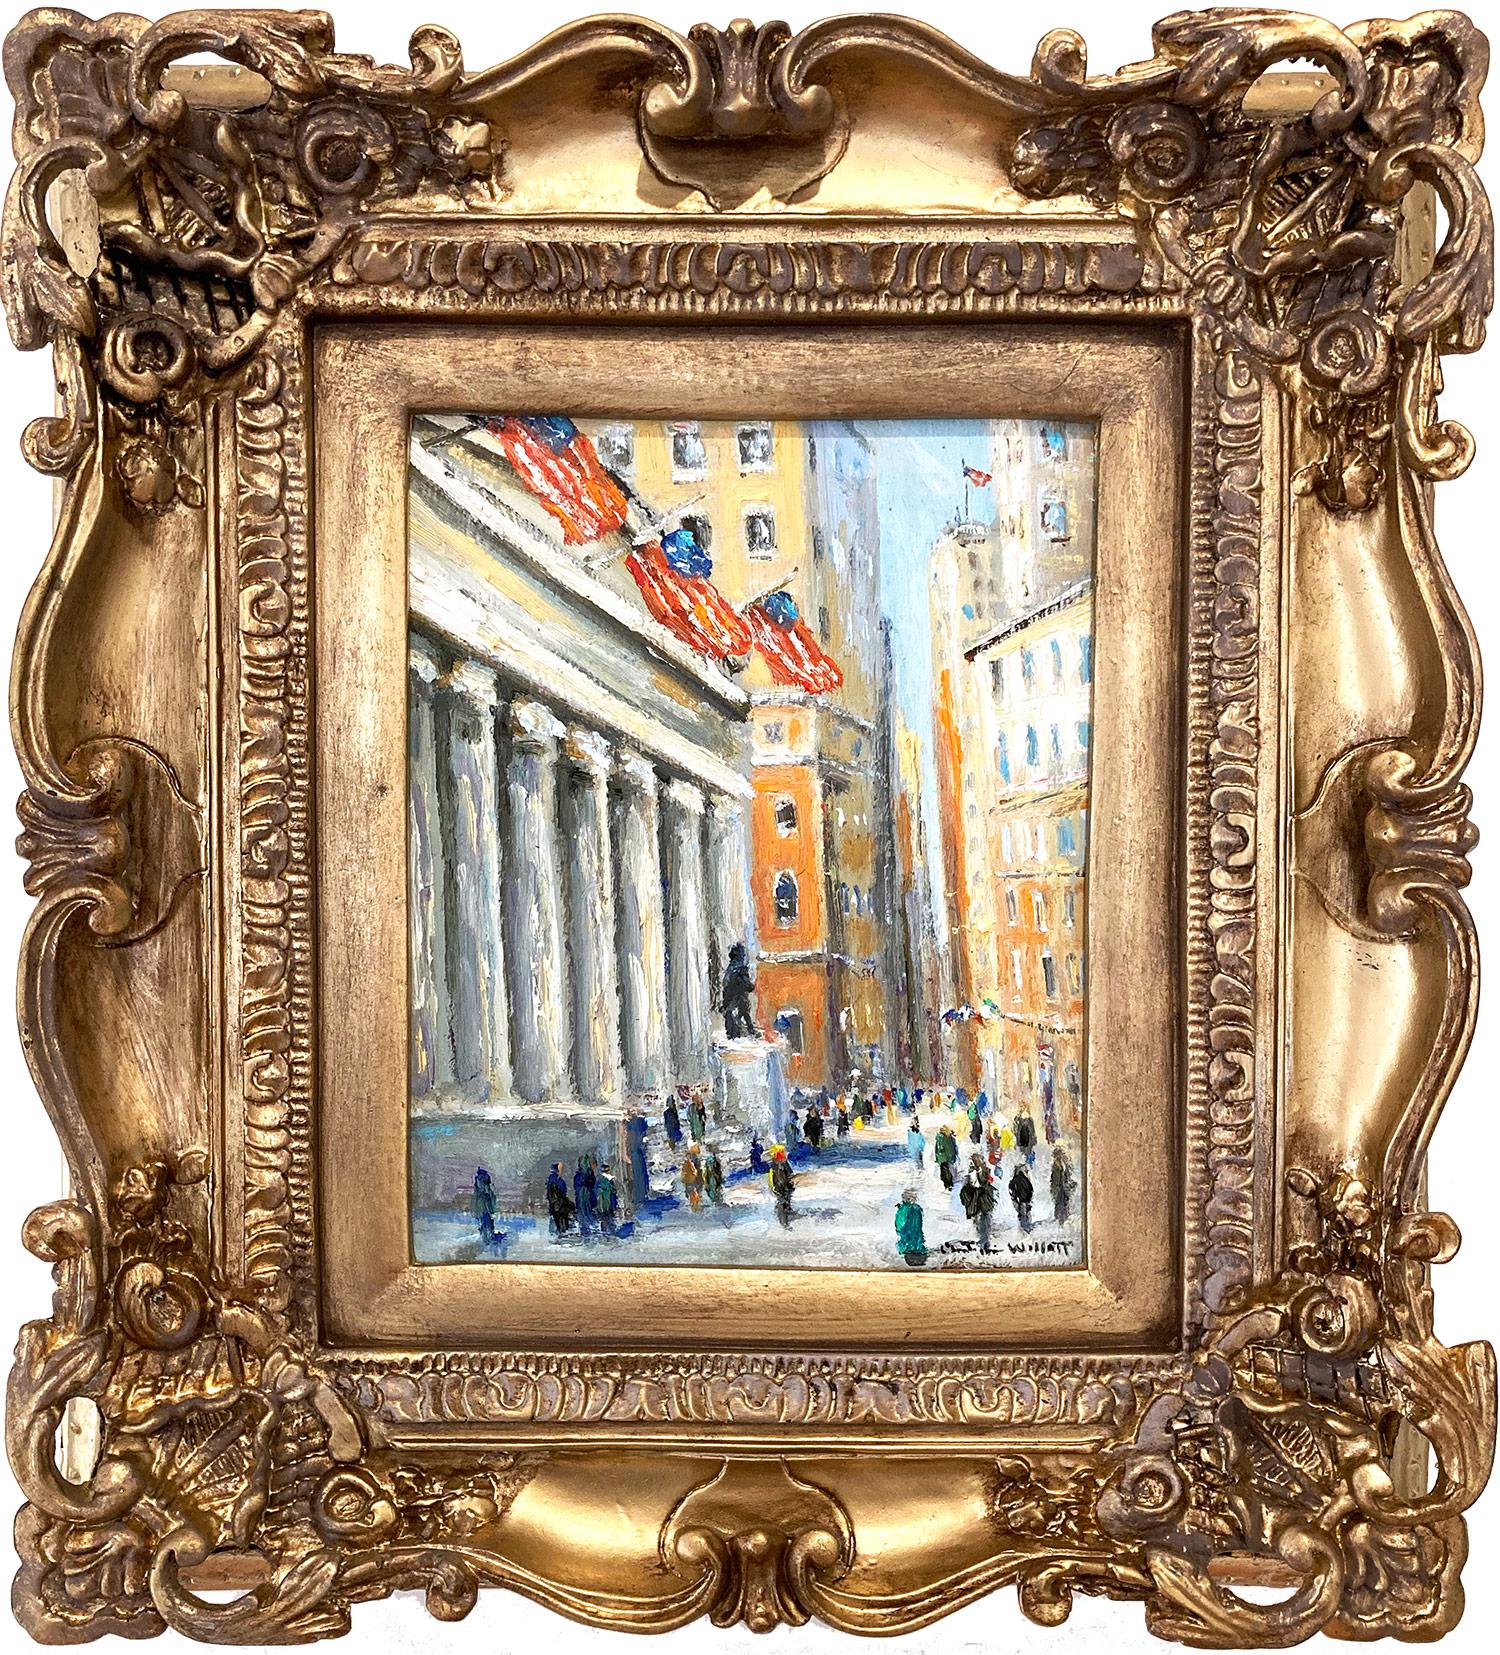 Figurative Painting Christopher Willett - "Bâtiment fédéral - Wall Street, NYC" Peinture à l'huile impressionniste - Scène d'hiver